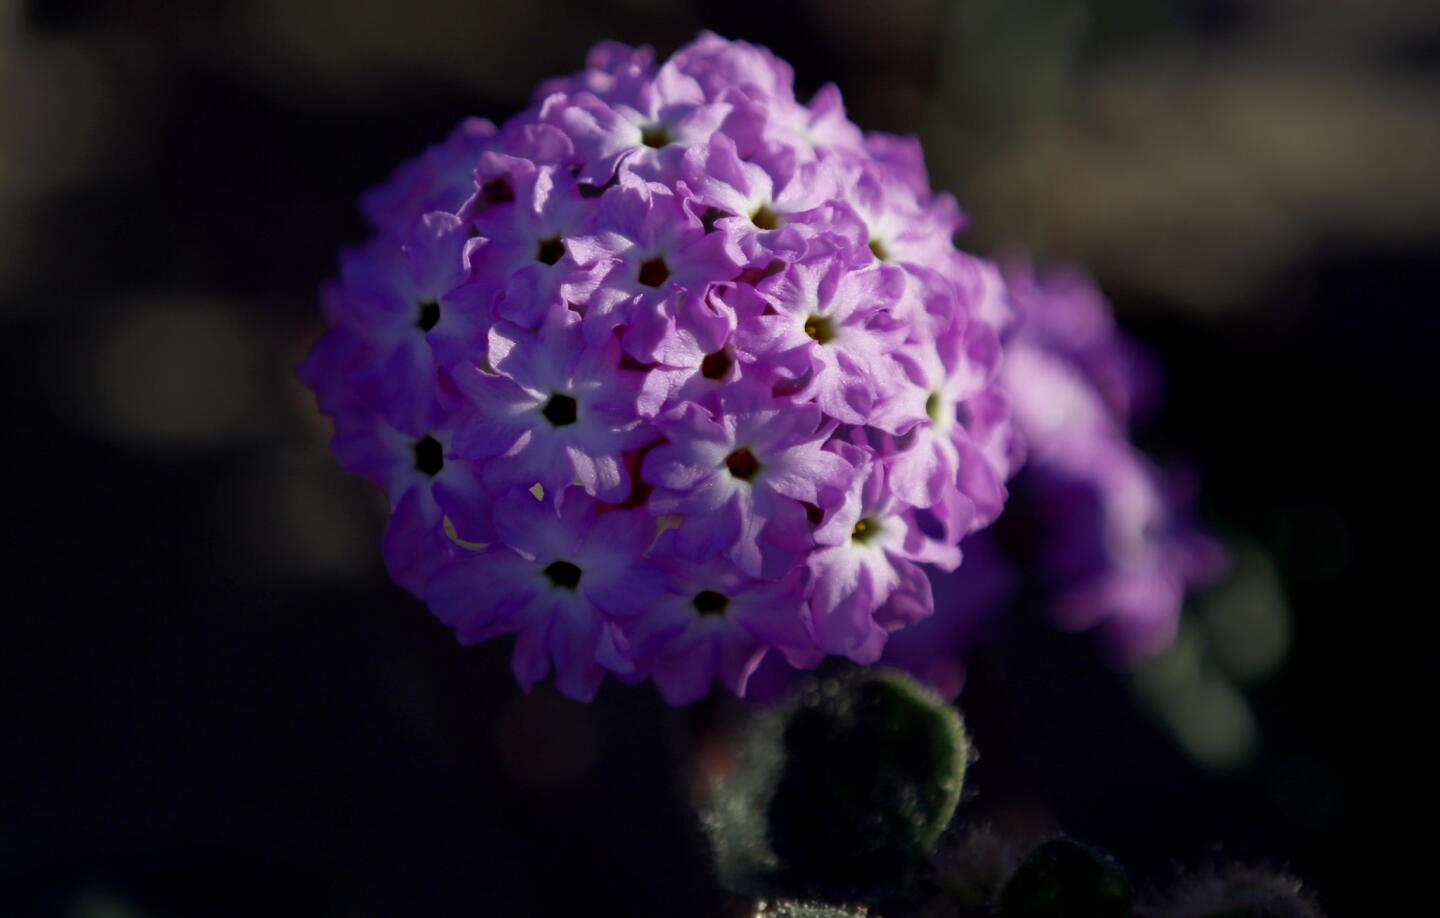 Anza-Borrego Desert wildflower bloom